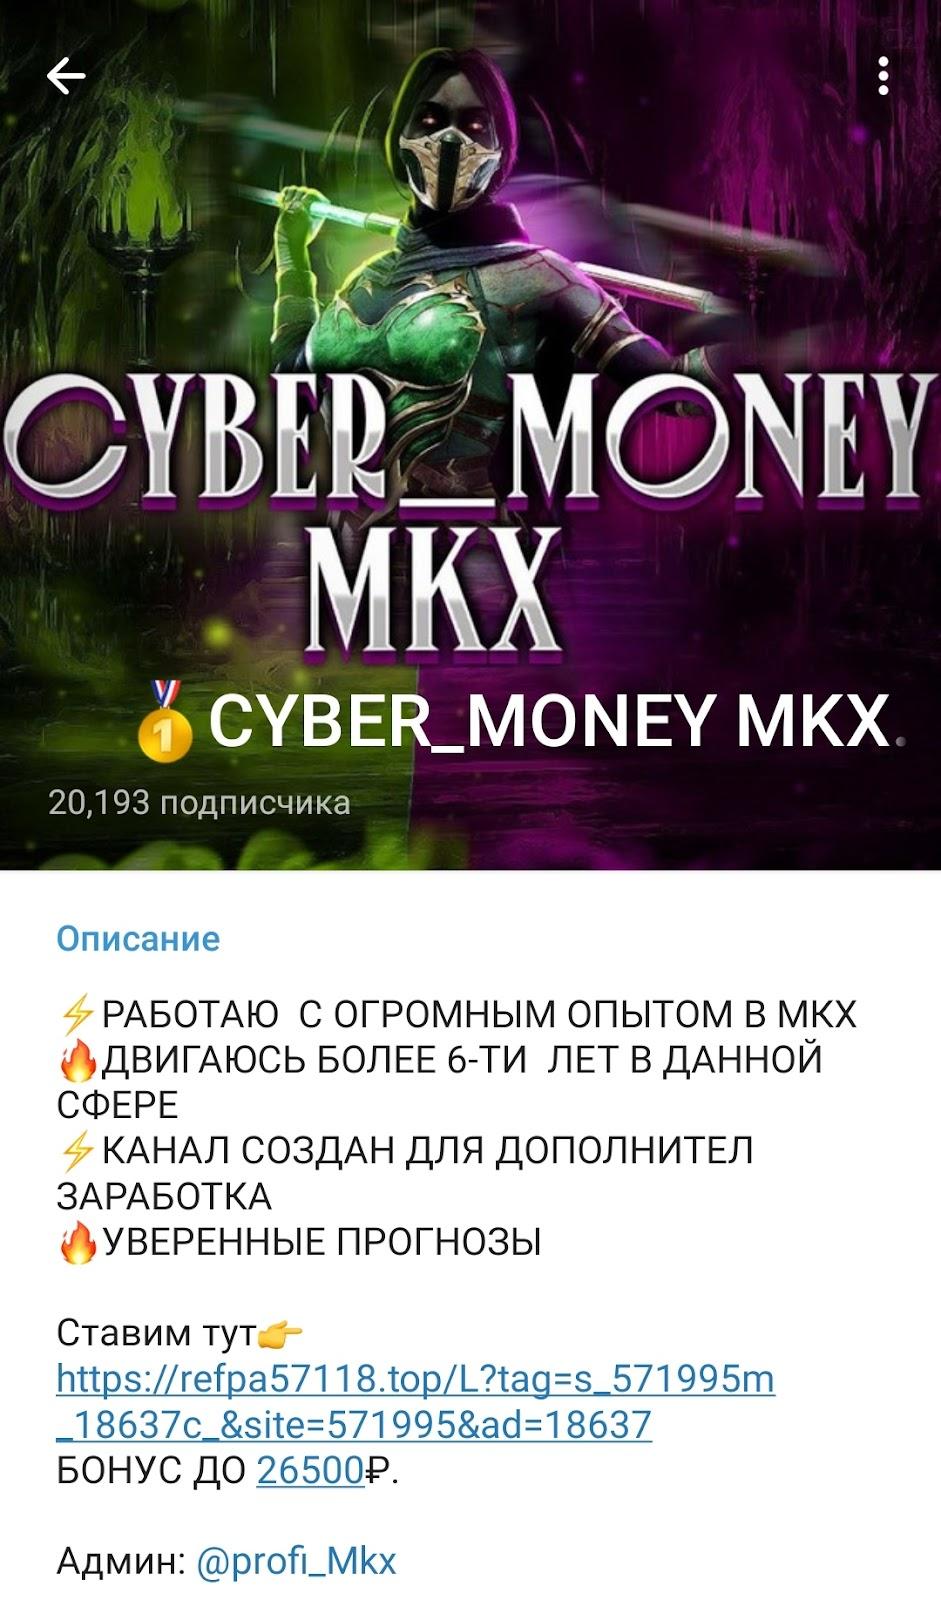 Cyber Money MKX телеграм